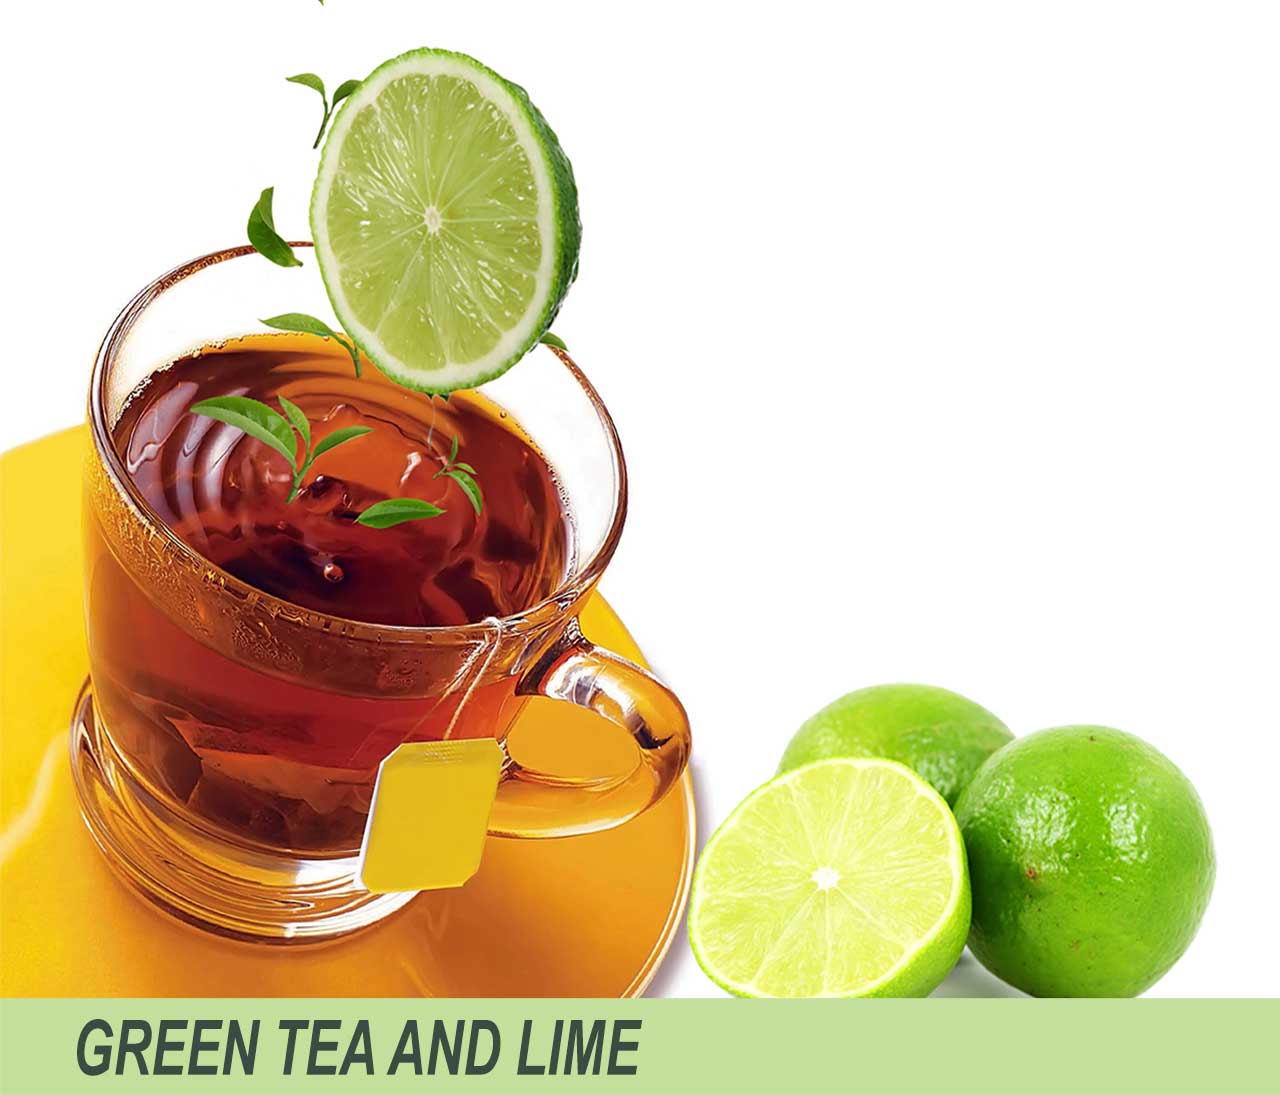 Green tea and lime